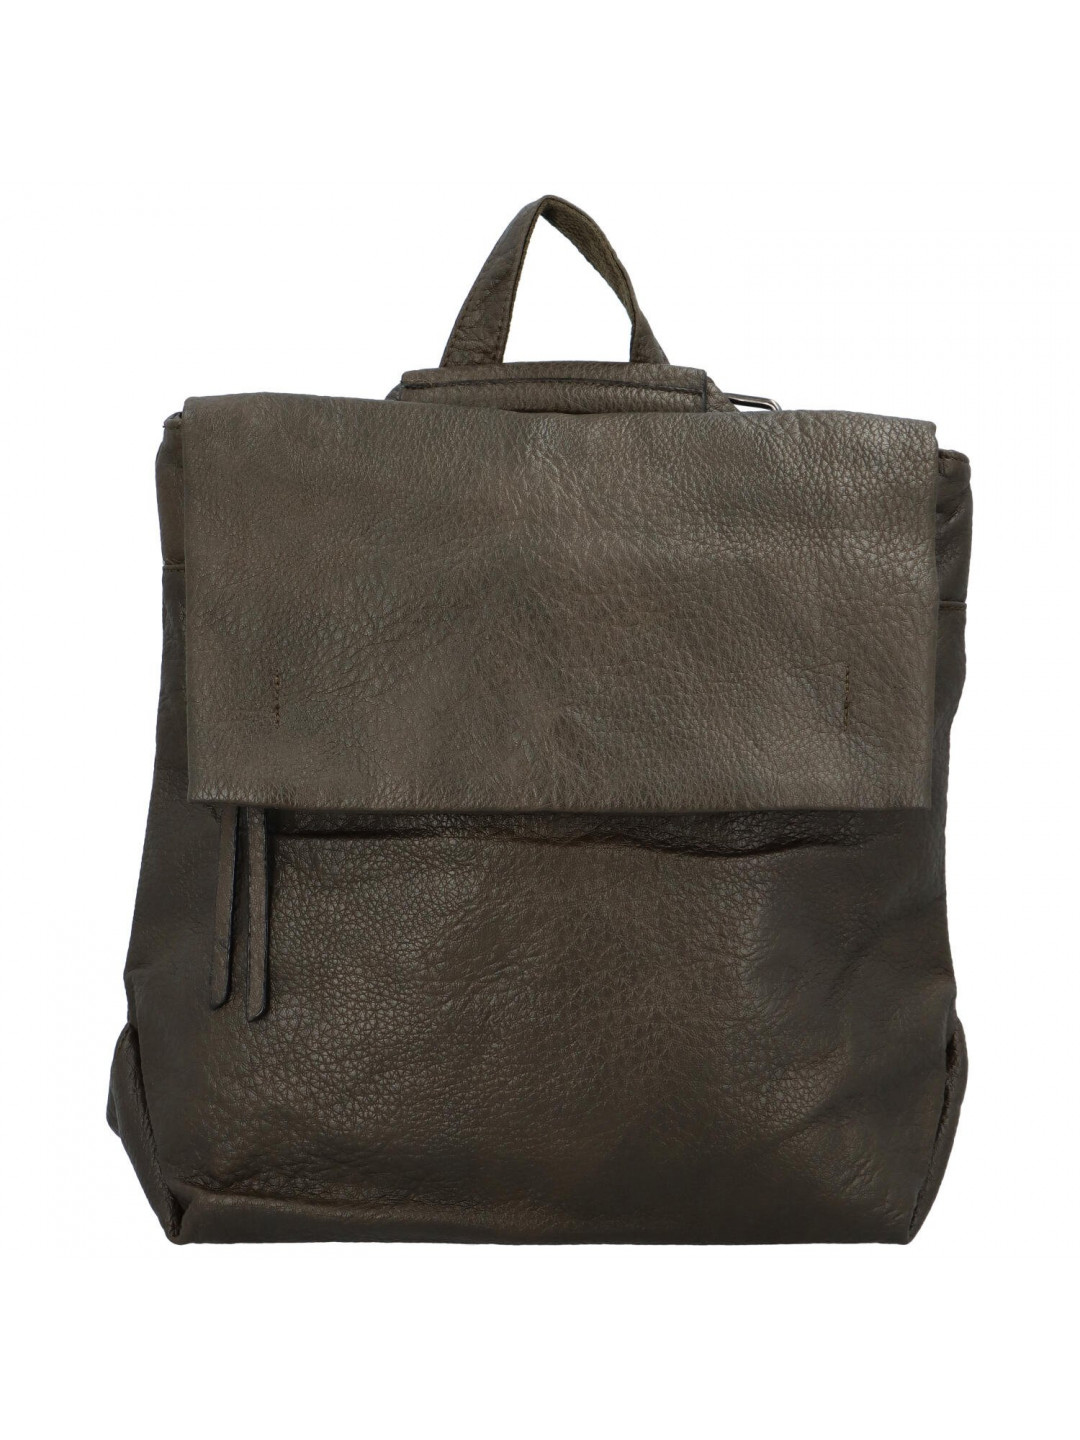 Dámský kabelko-batoh tmavě zelený – Paolo bags Ralica